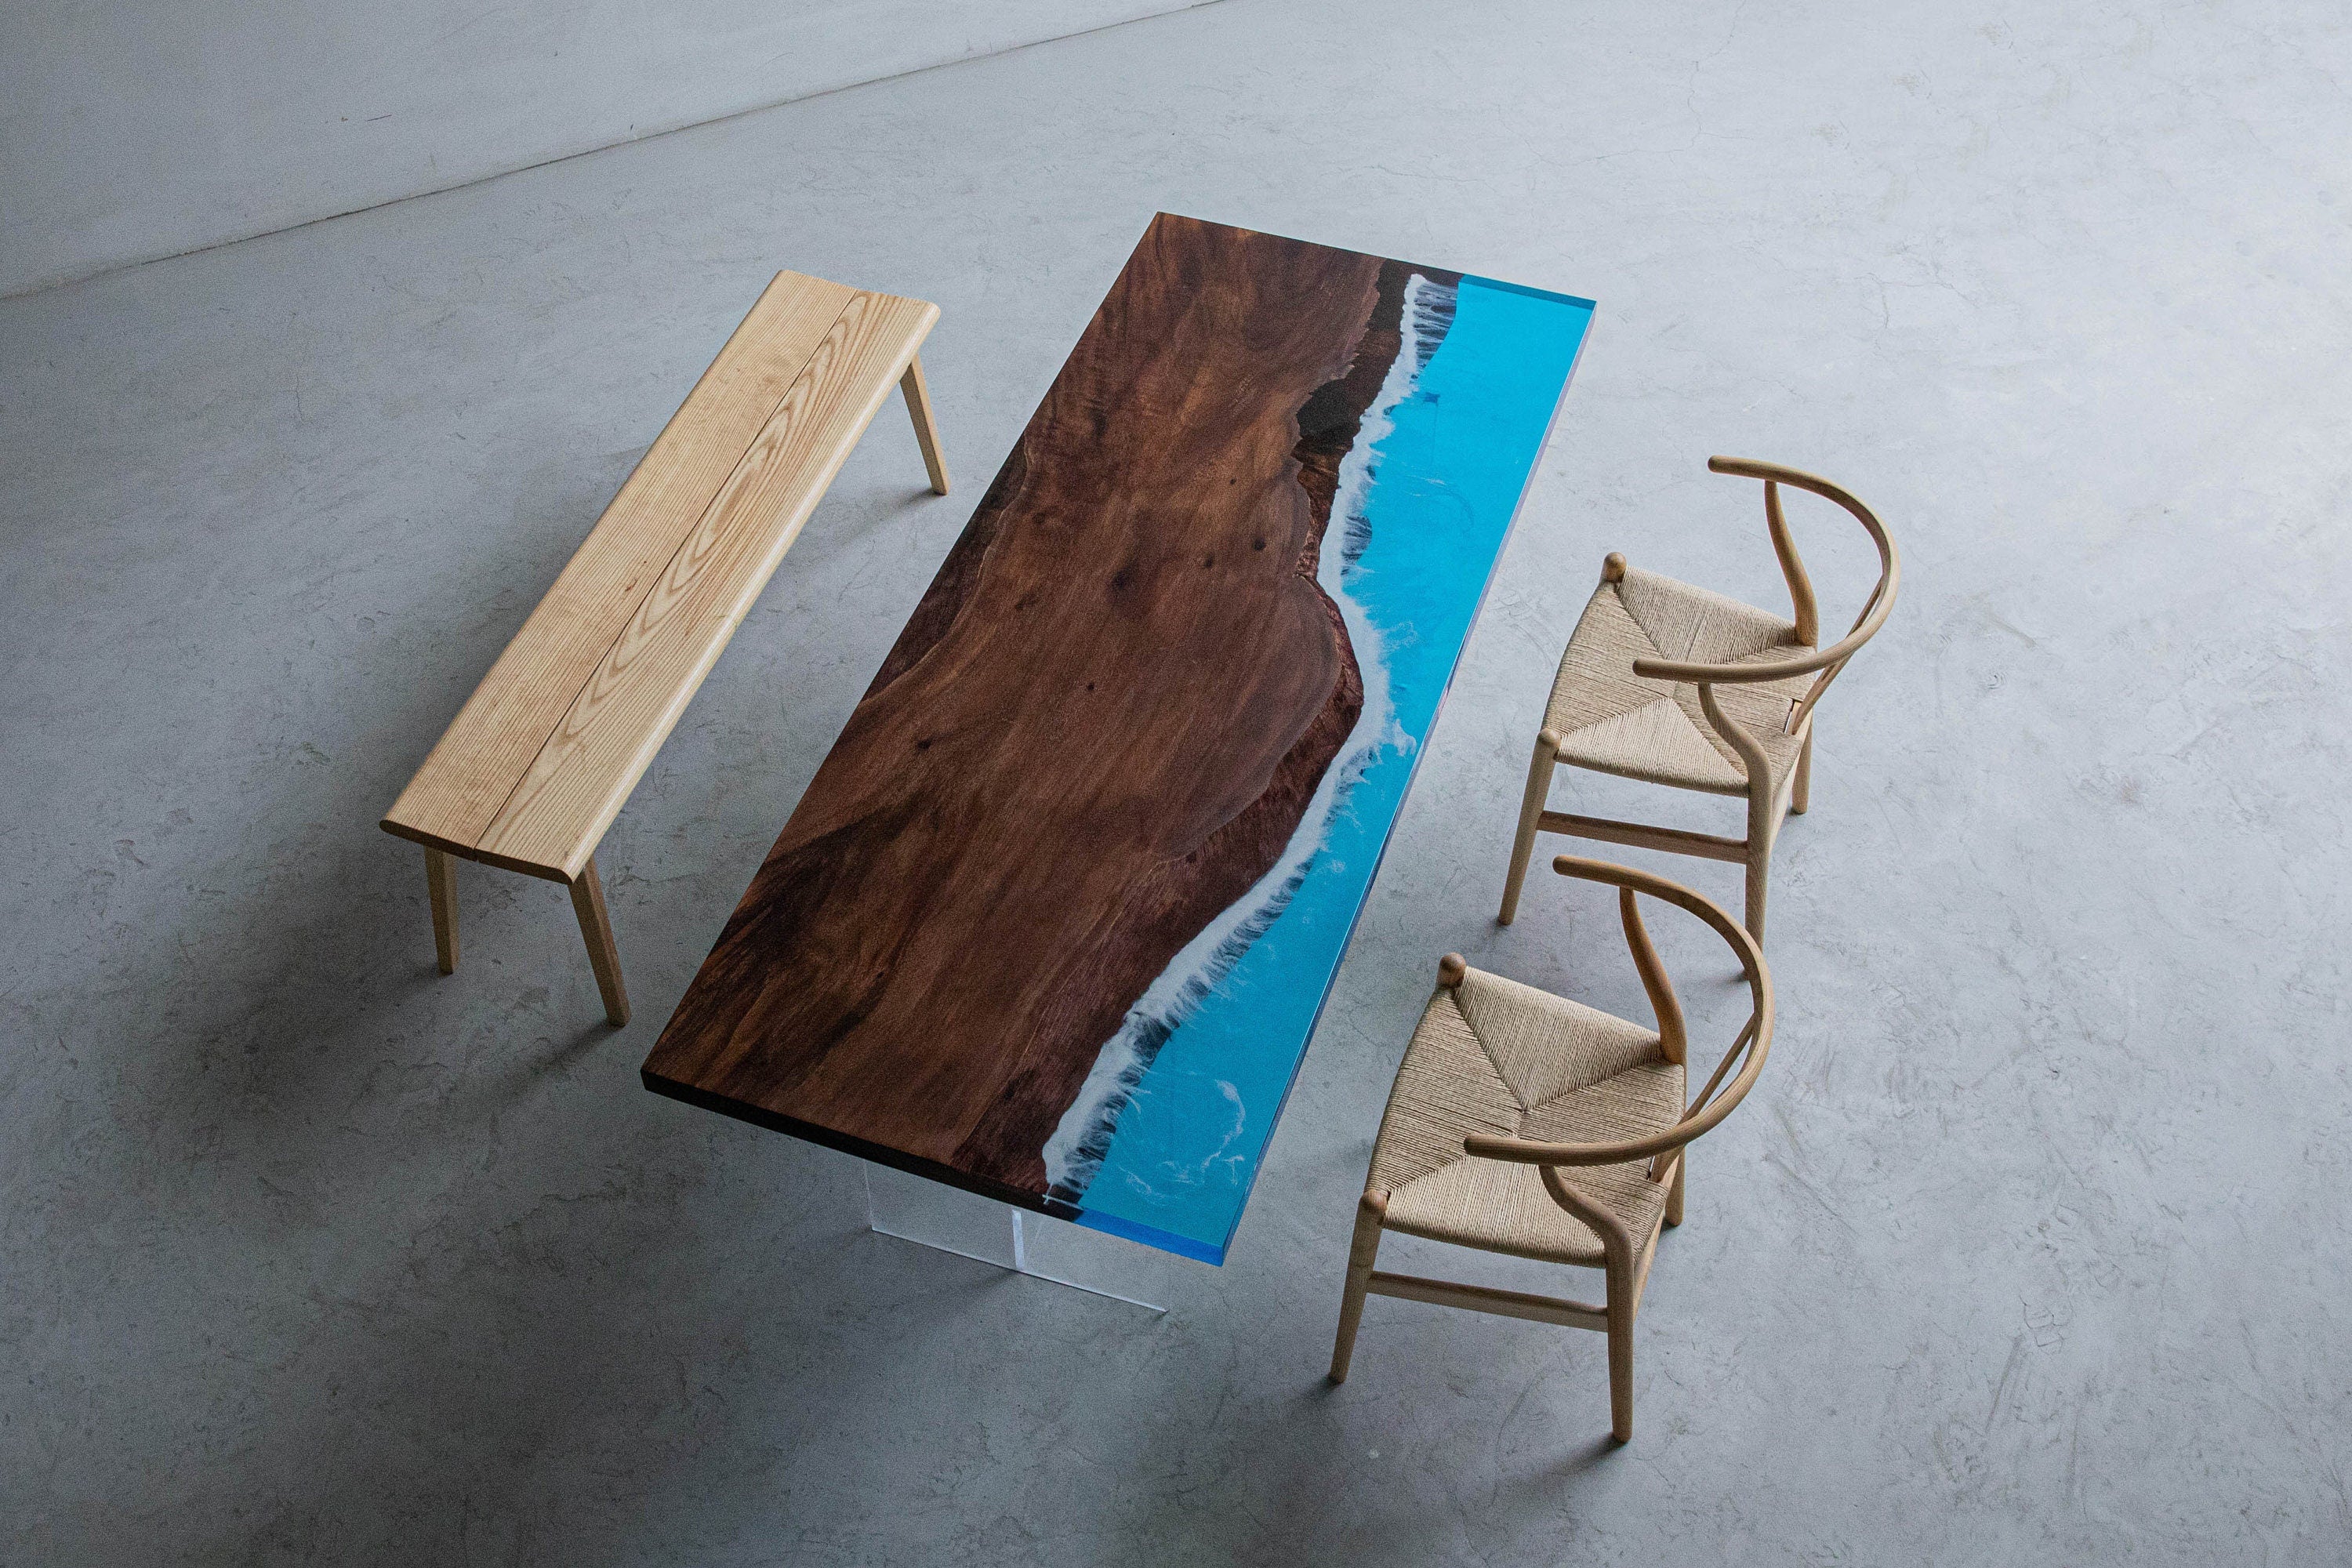 طاولة إيبوكسي النهر الأزرق، طاولة إيبوكسي اللون الأزرق، طاولة النهر.